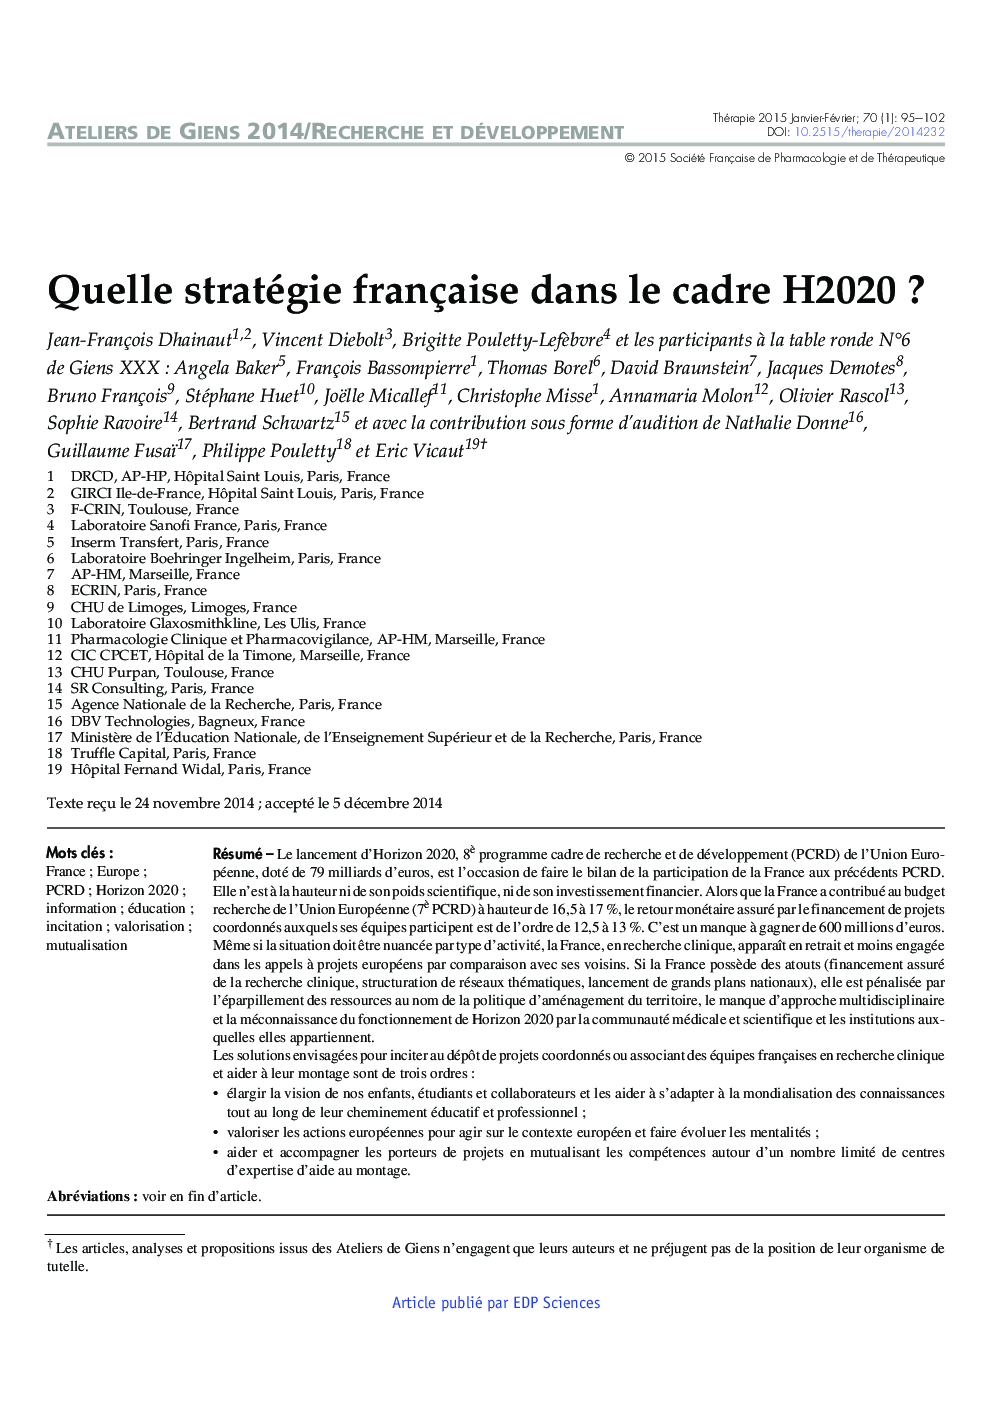 Quelle stratégie française dans le cadre H2020 ?